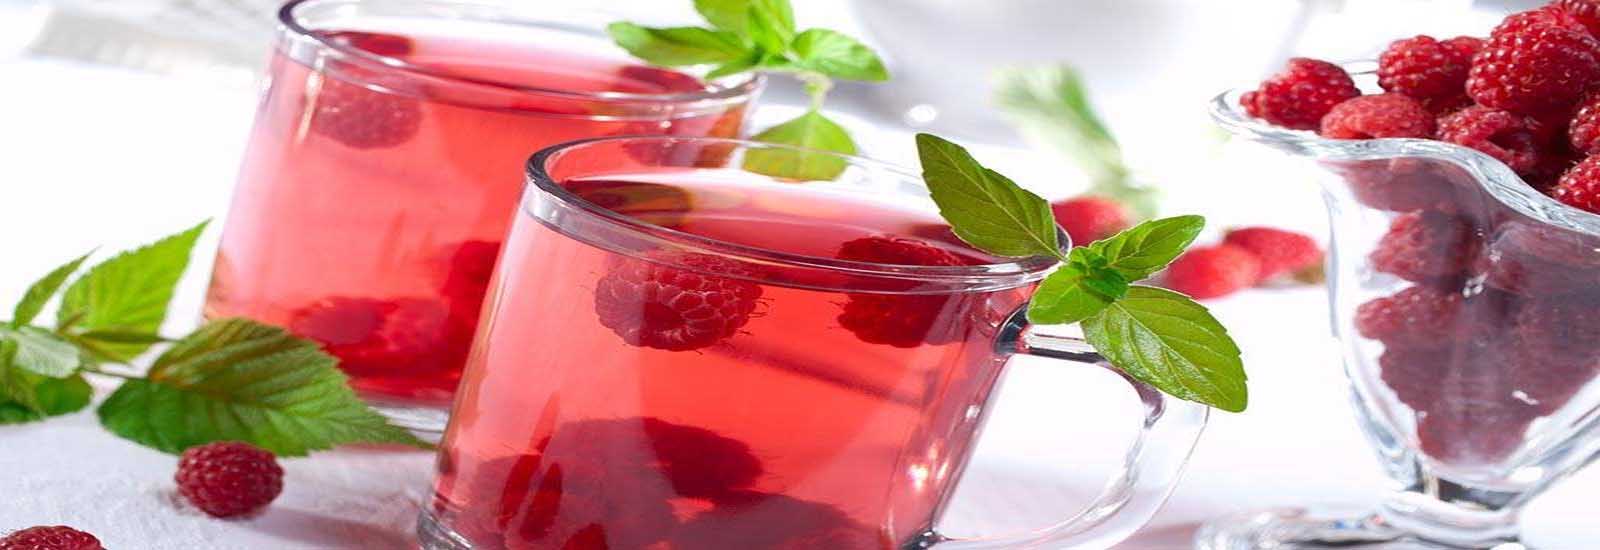 प्रेगनेंसी में रैस्पबेरी के पत्तियों की चाय पीने के फायदे और नुकसान